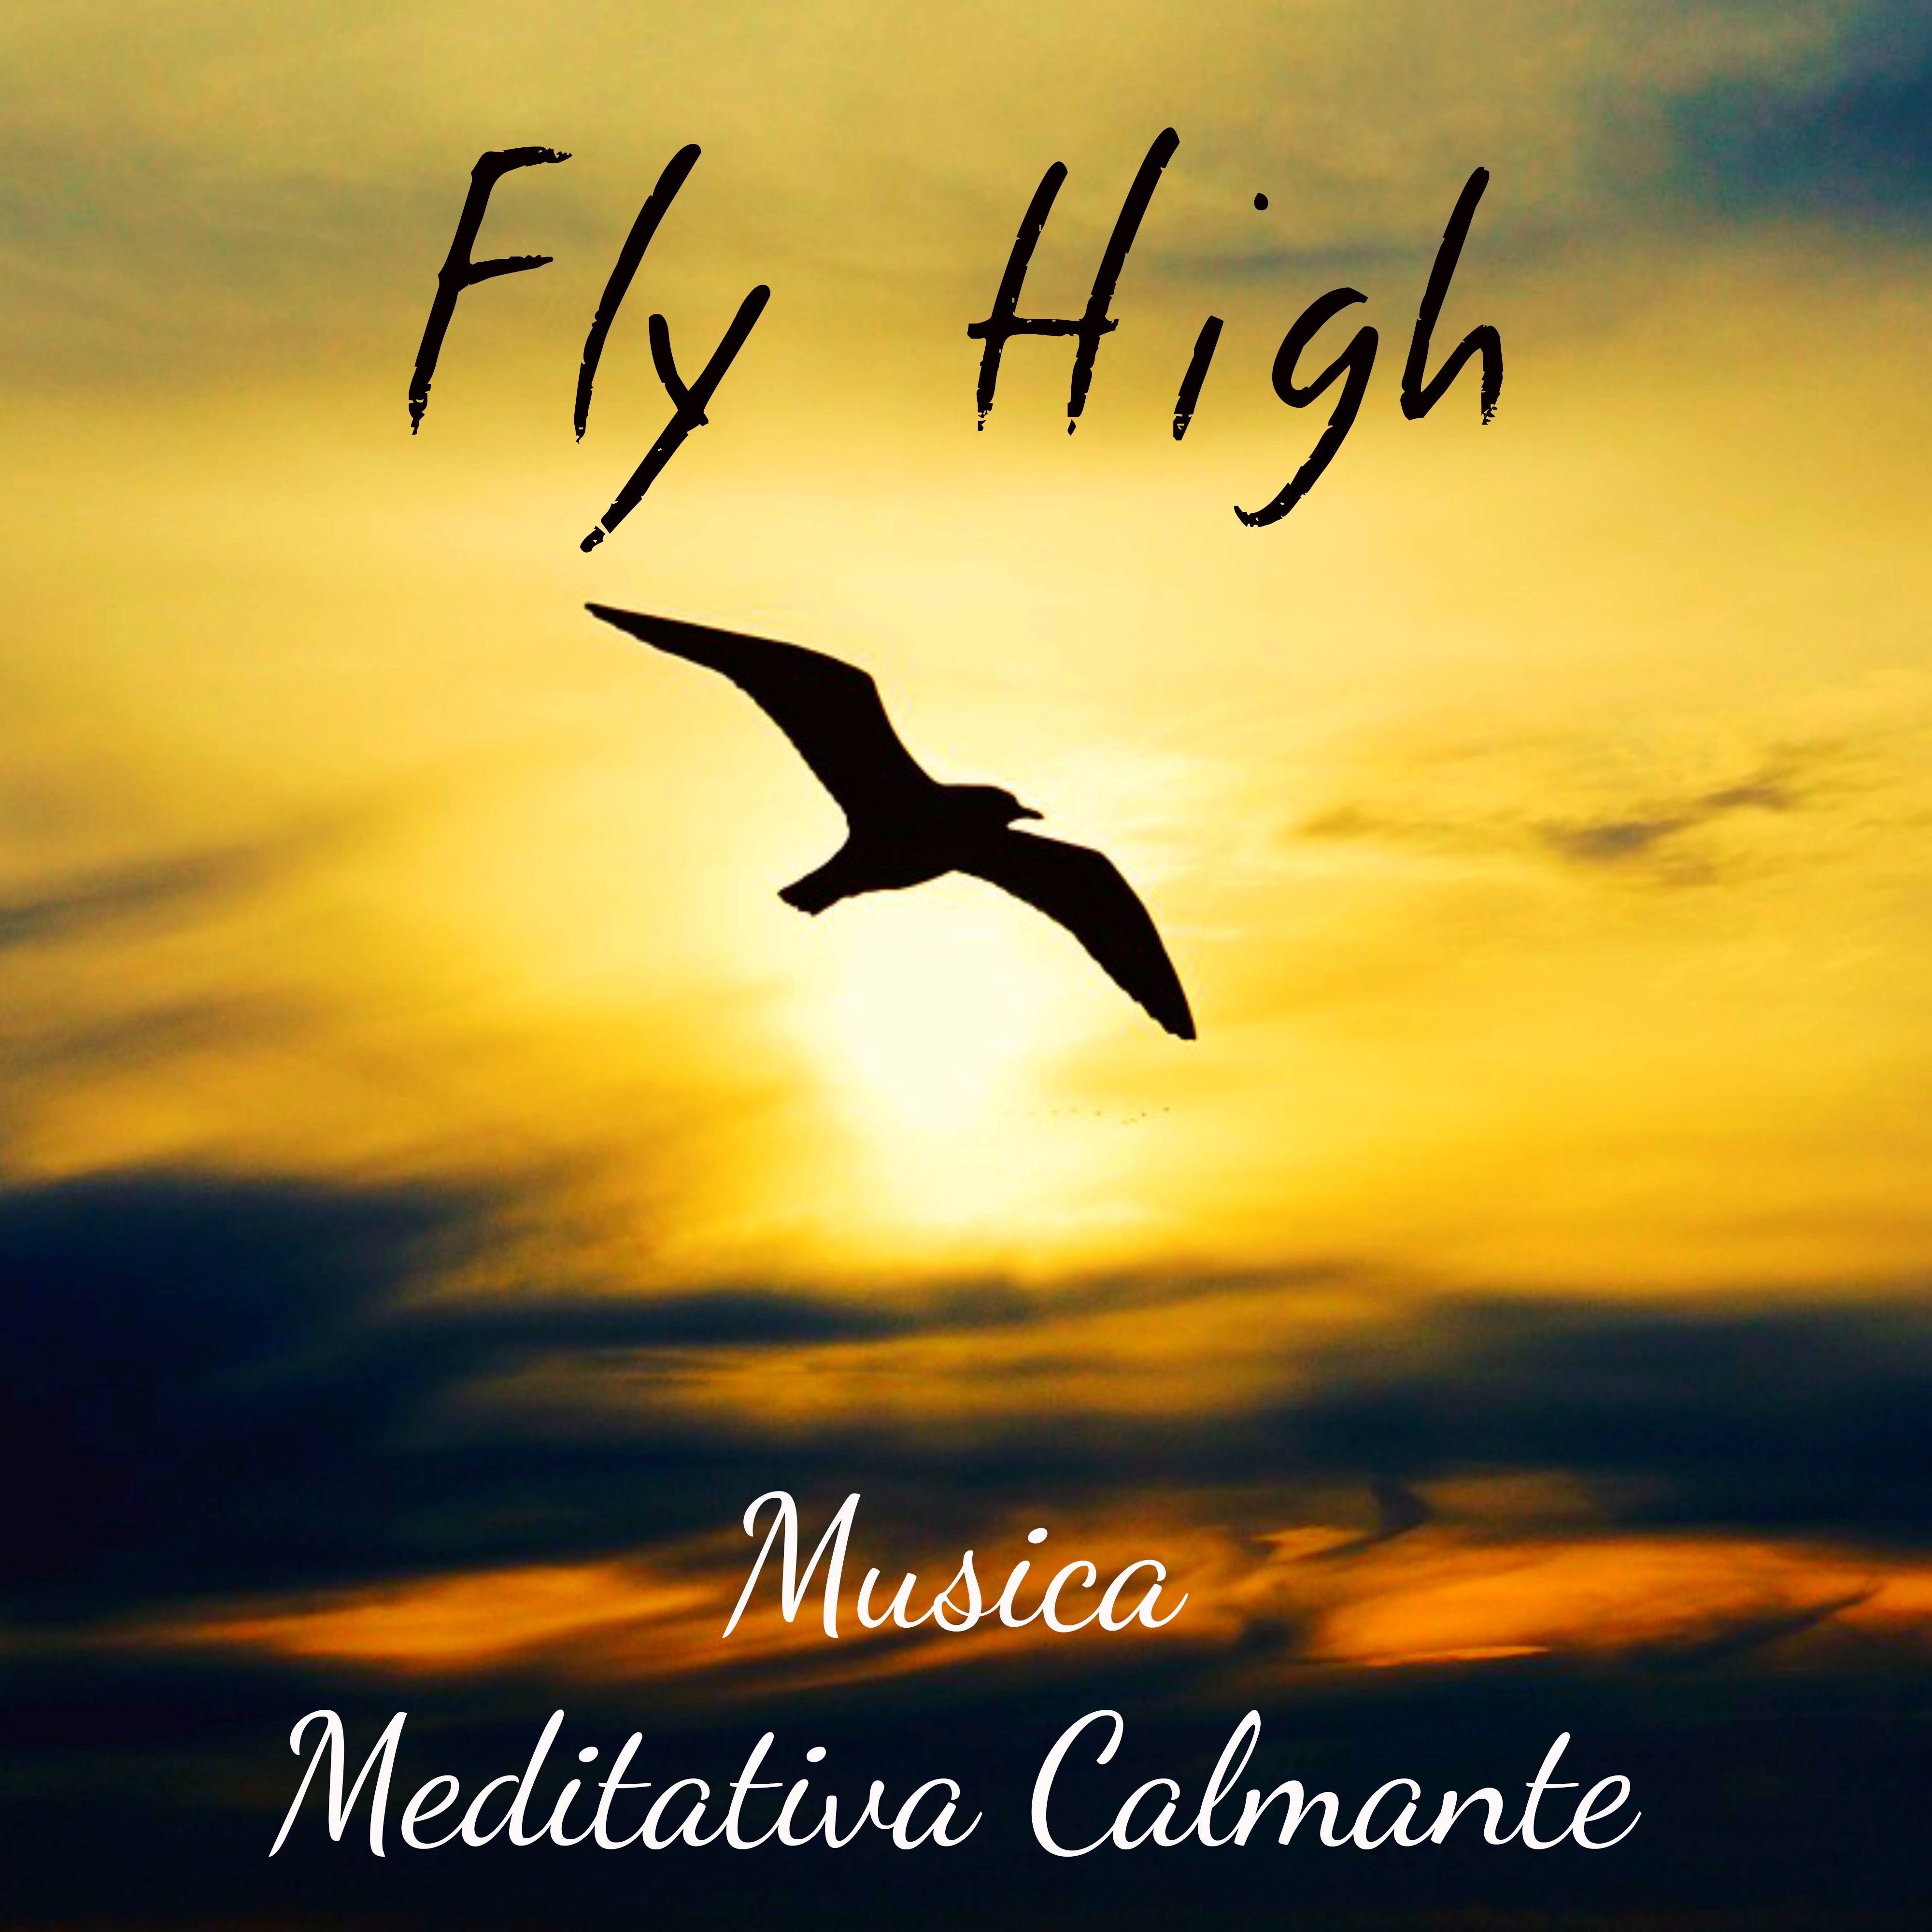 Fly High - Musica Meditativa Calmante per Tecniche di Rilassamento Pace Interiore Equilibrare Chakra con Suoni New Age Strumentali